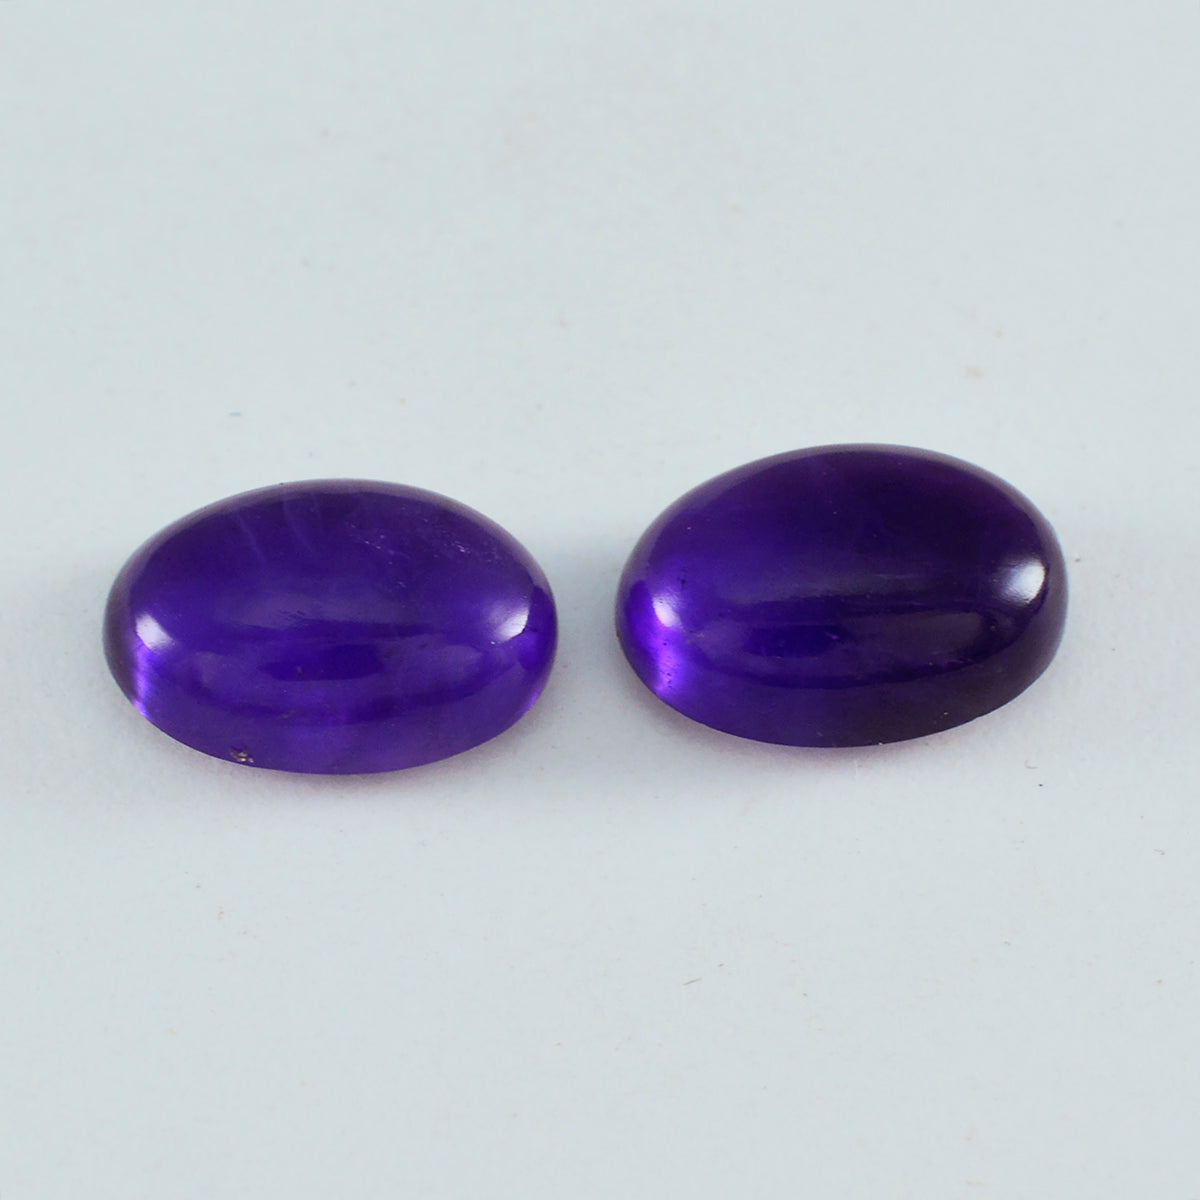 Riyogems 1PC Purple Amethyst Cabochon 12x16 mm Oval Shape pretty Quality Gemstone